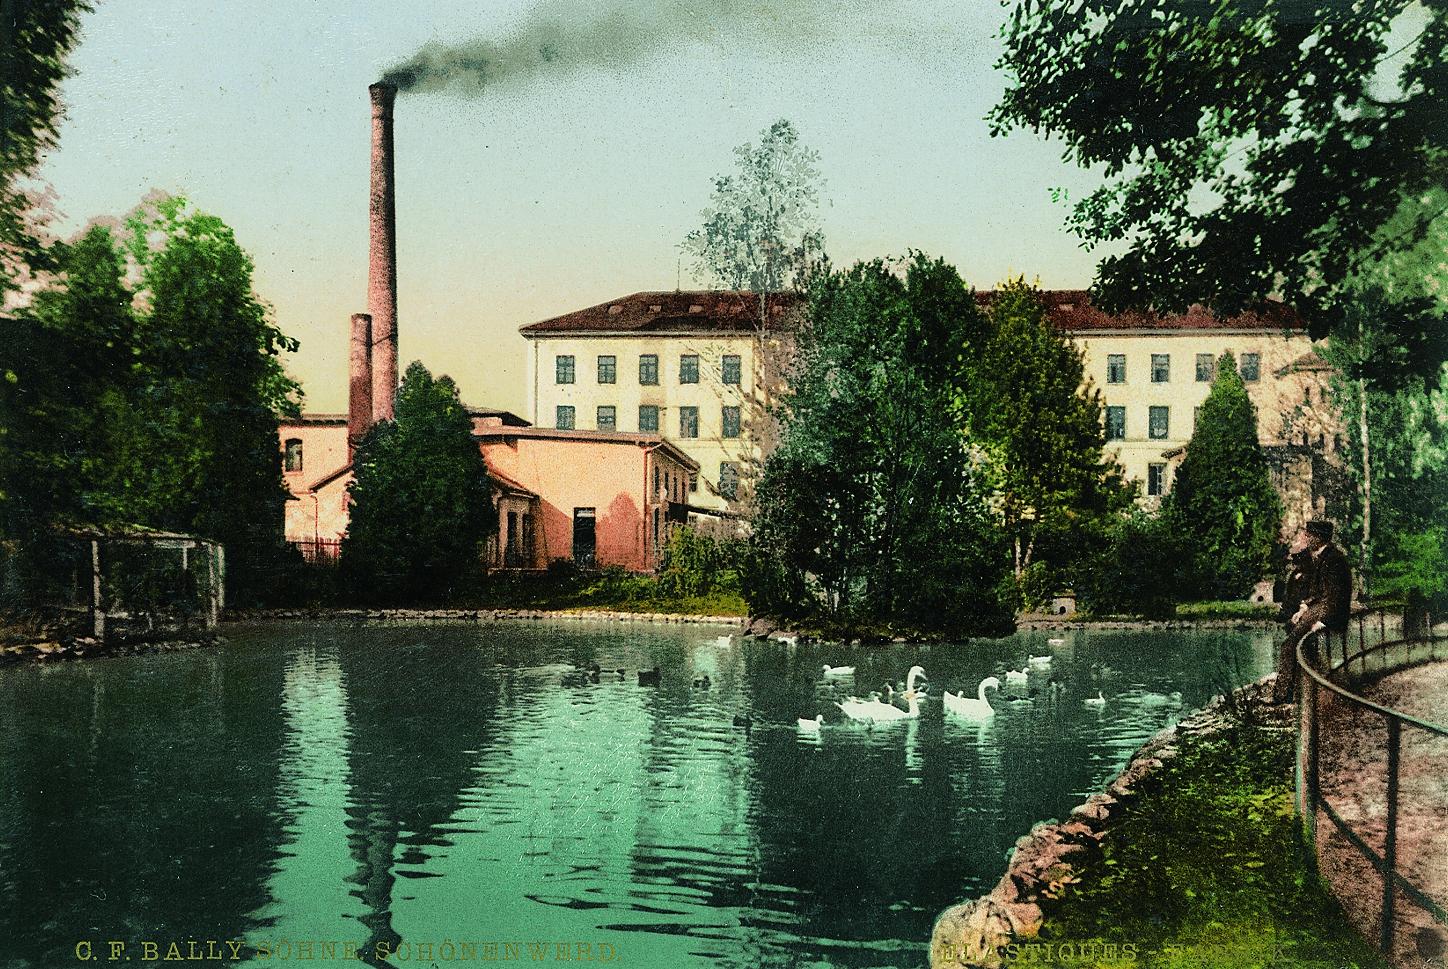 صورة قديمة لمبنى مصنع في منتصف القرن التاسع عشر